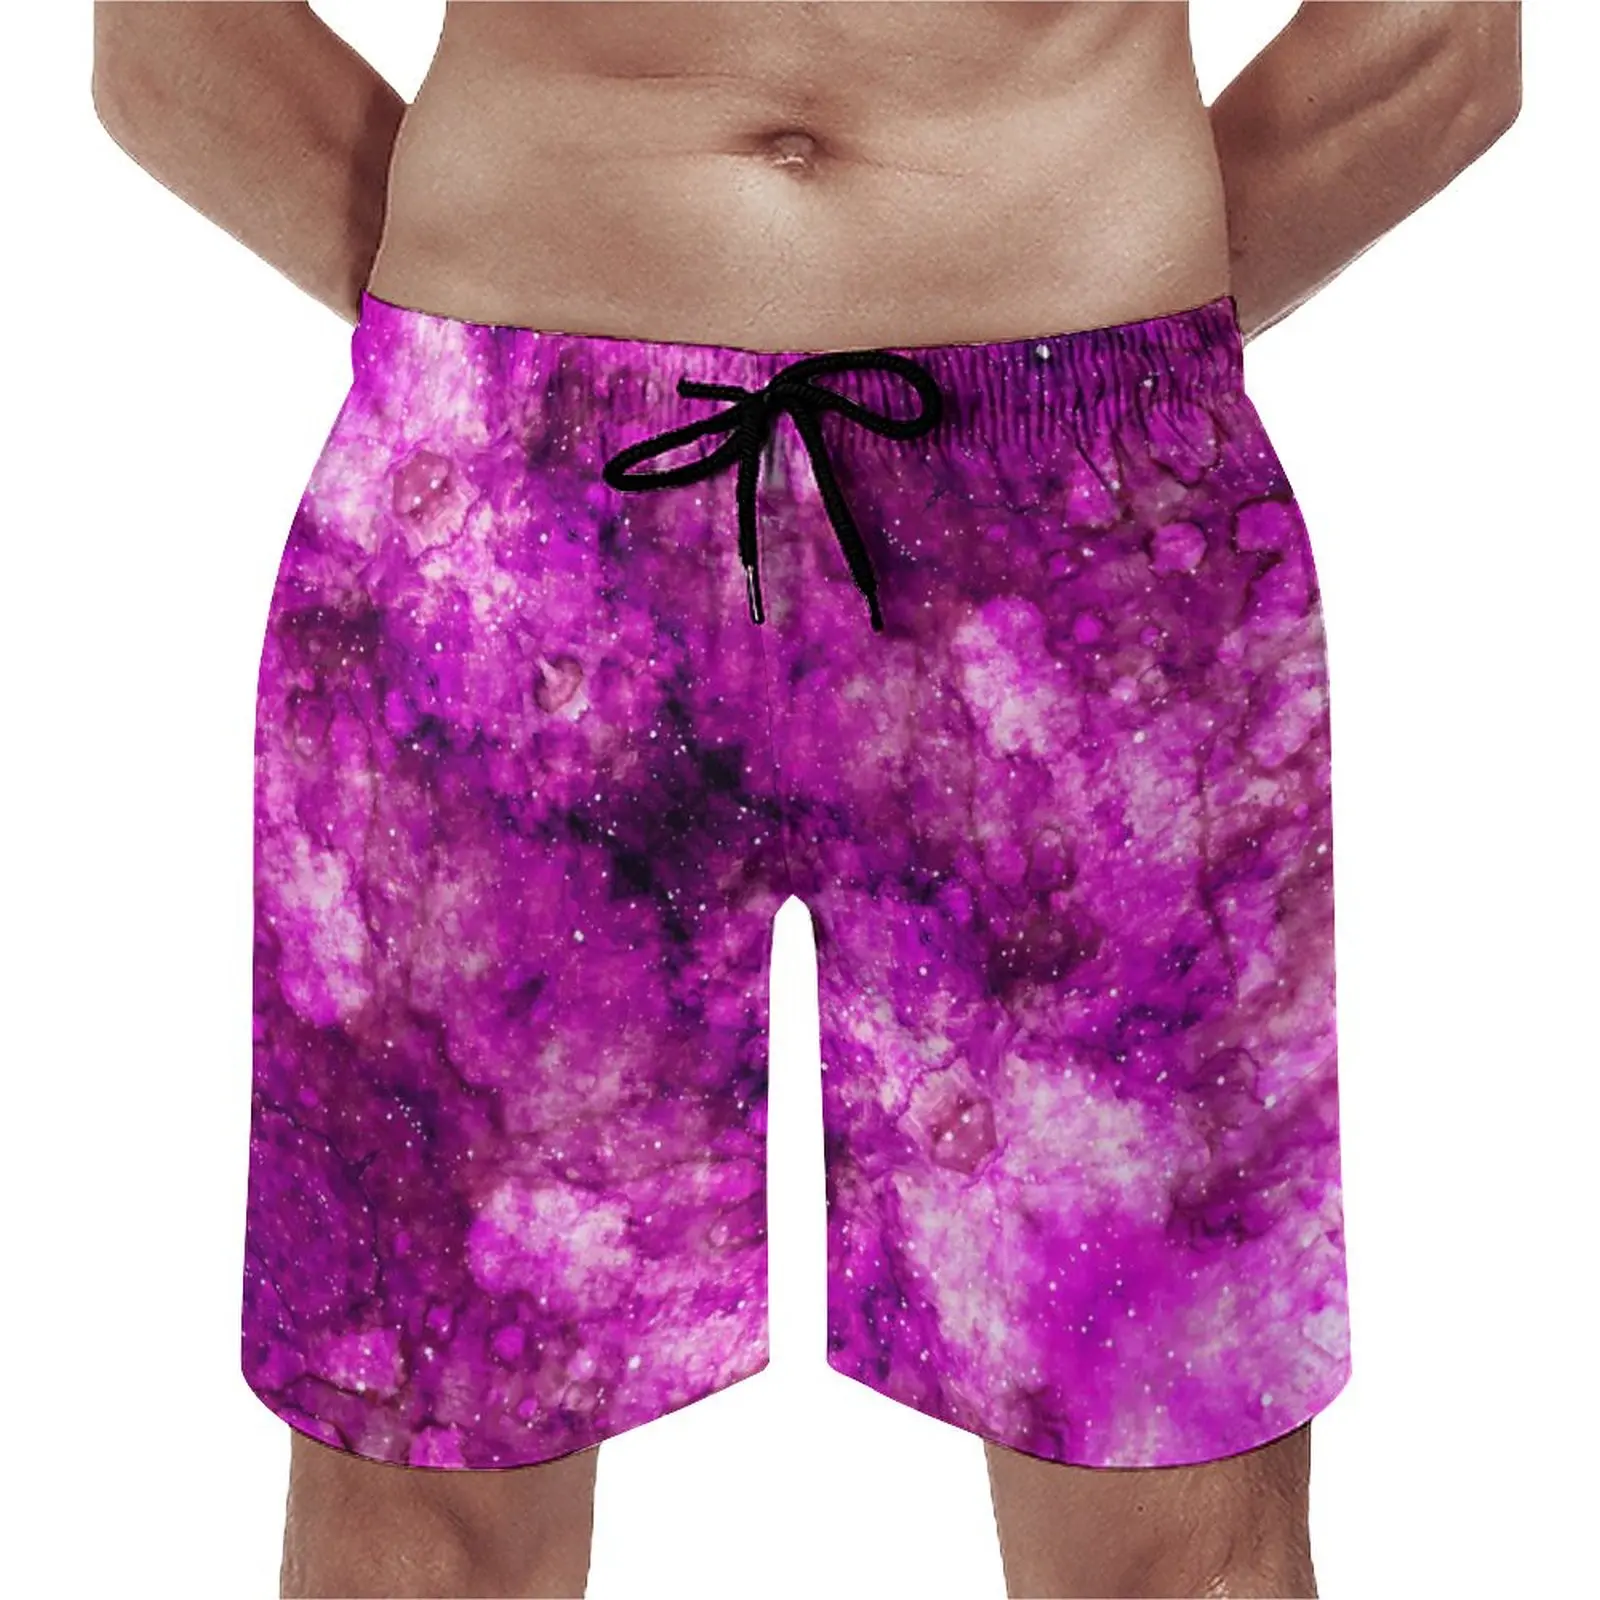 

Летние пляжные шорты фиолетового цвета с принтом Галактики, спортивные шорты для бега, повседневные быстросохнущие плавки больших размеров